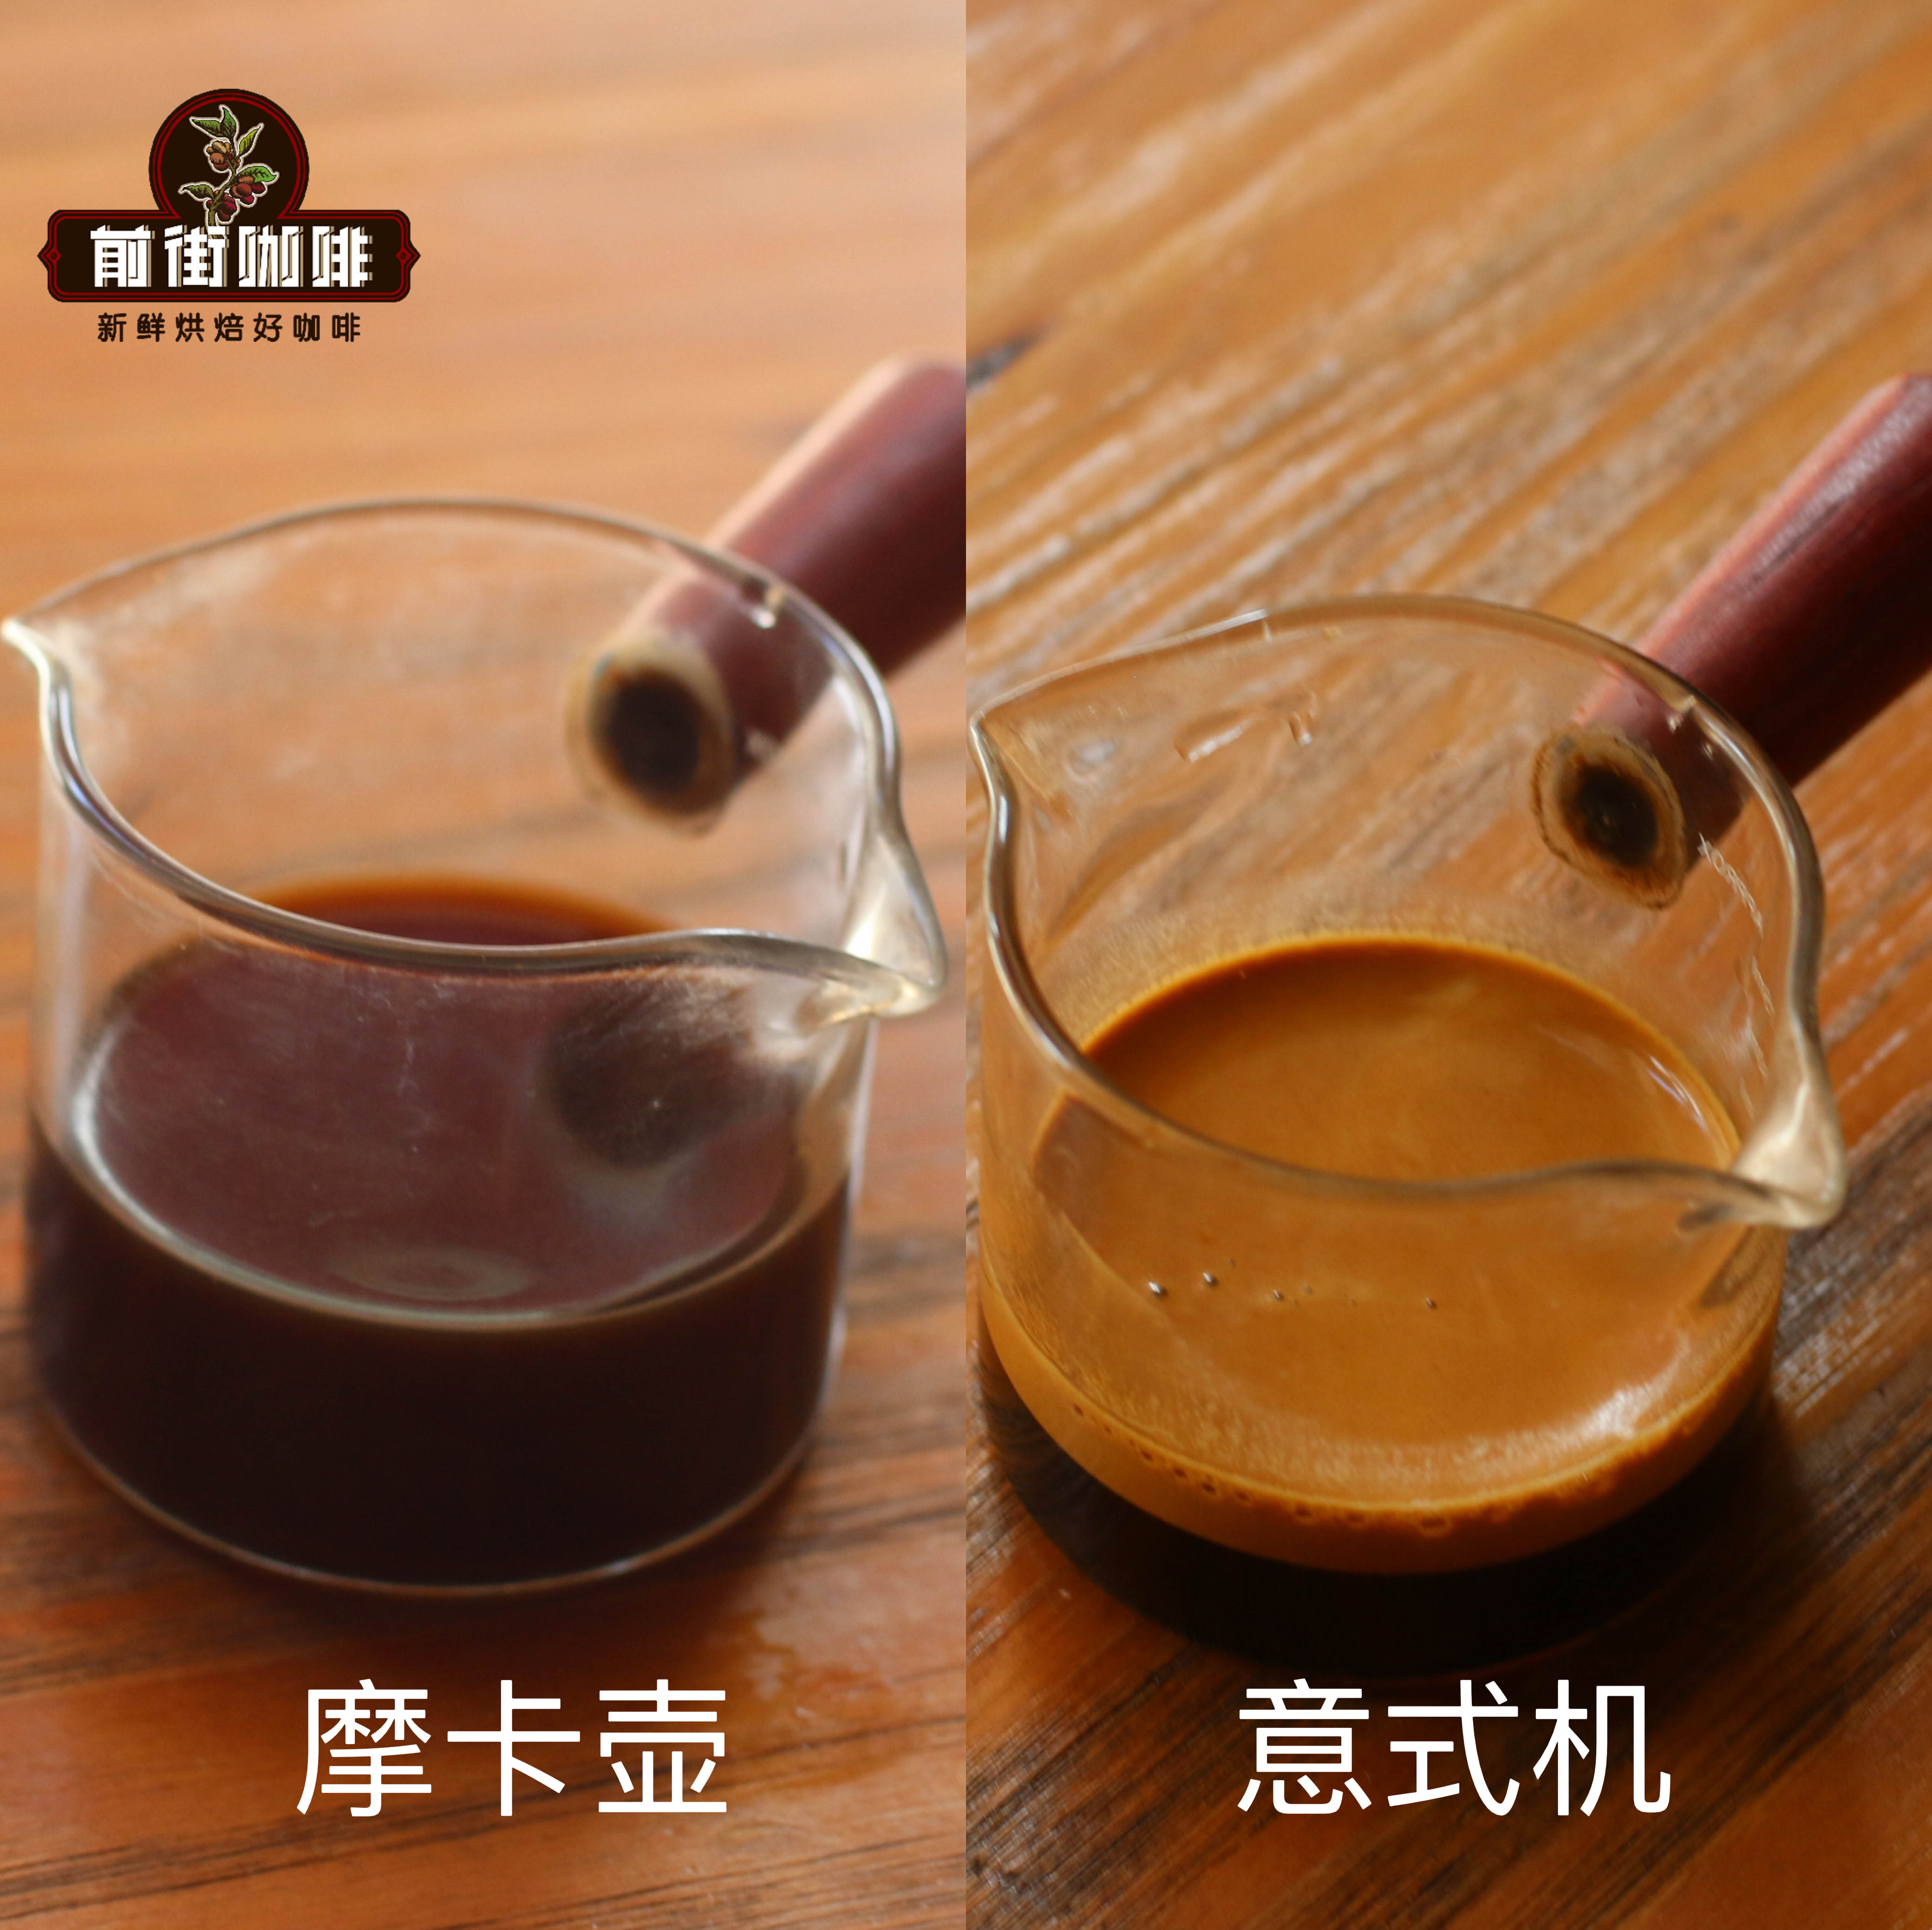 浓缩咖啡的咖啡因含量比滴滤咖啡的少吗?哪个的口感更好喝